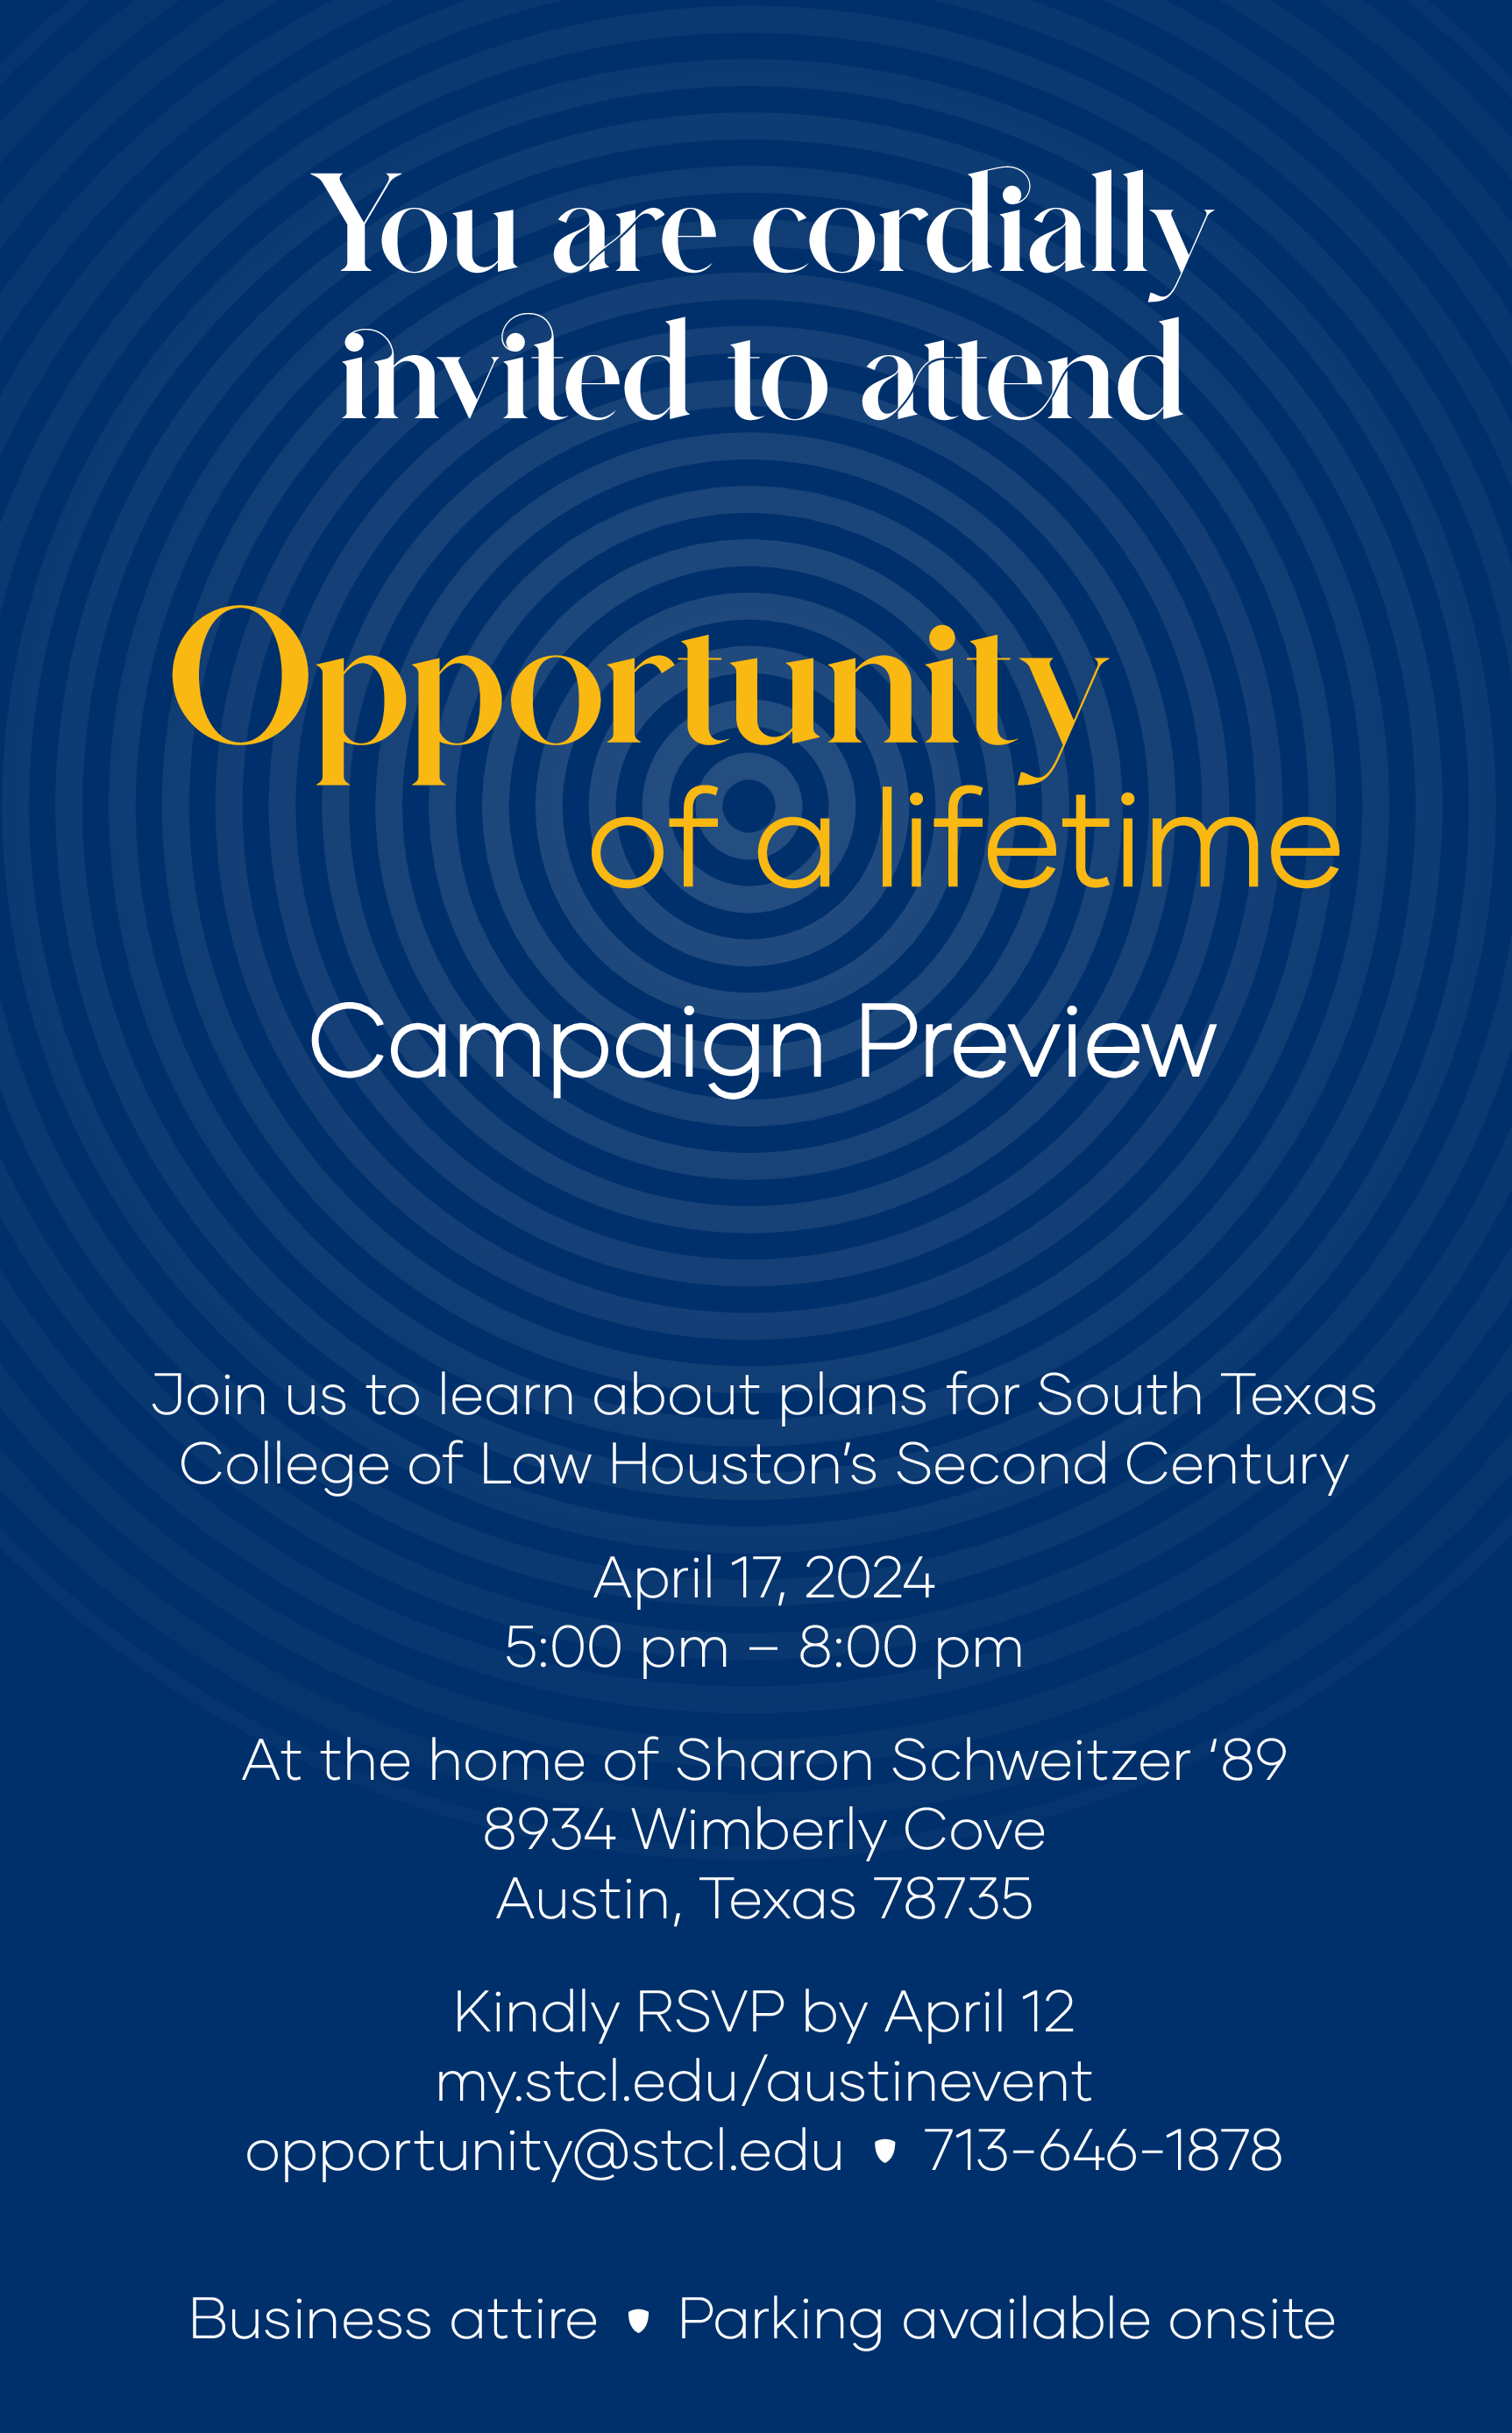 Austin Campaign Preview Invite